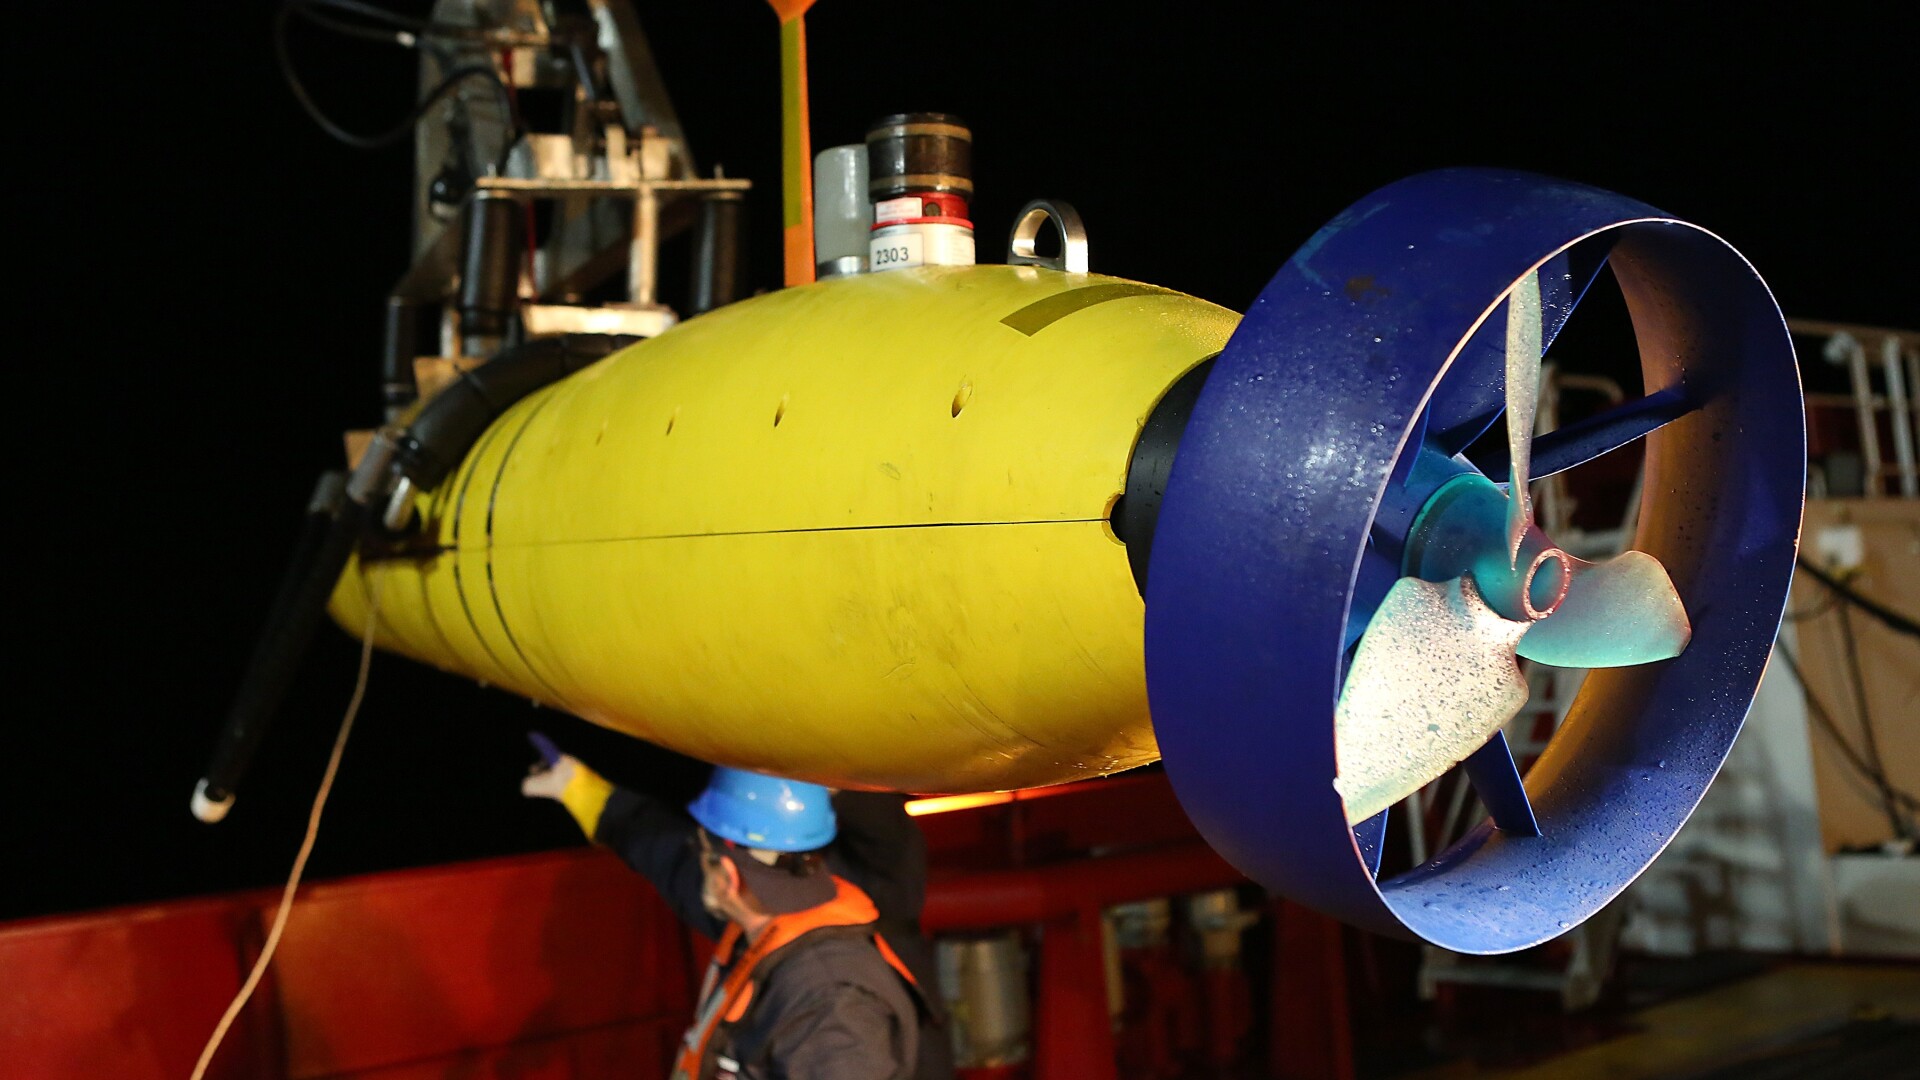 Bluefin-21, robotul subacvatic folosit in cautarea avionului MH370